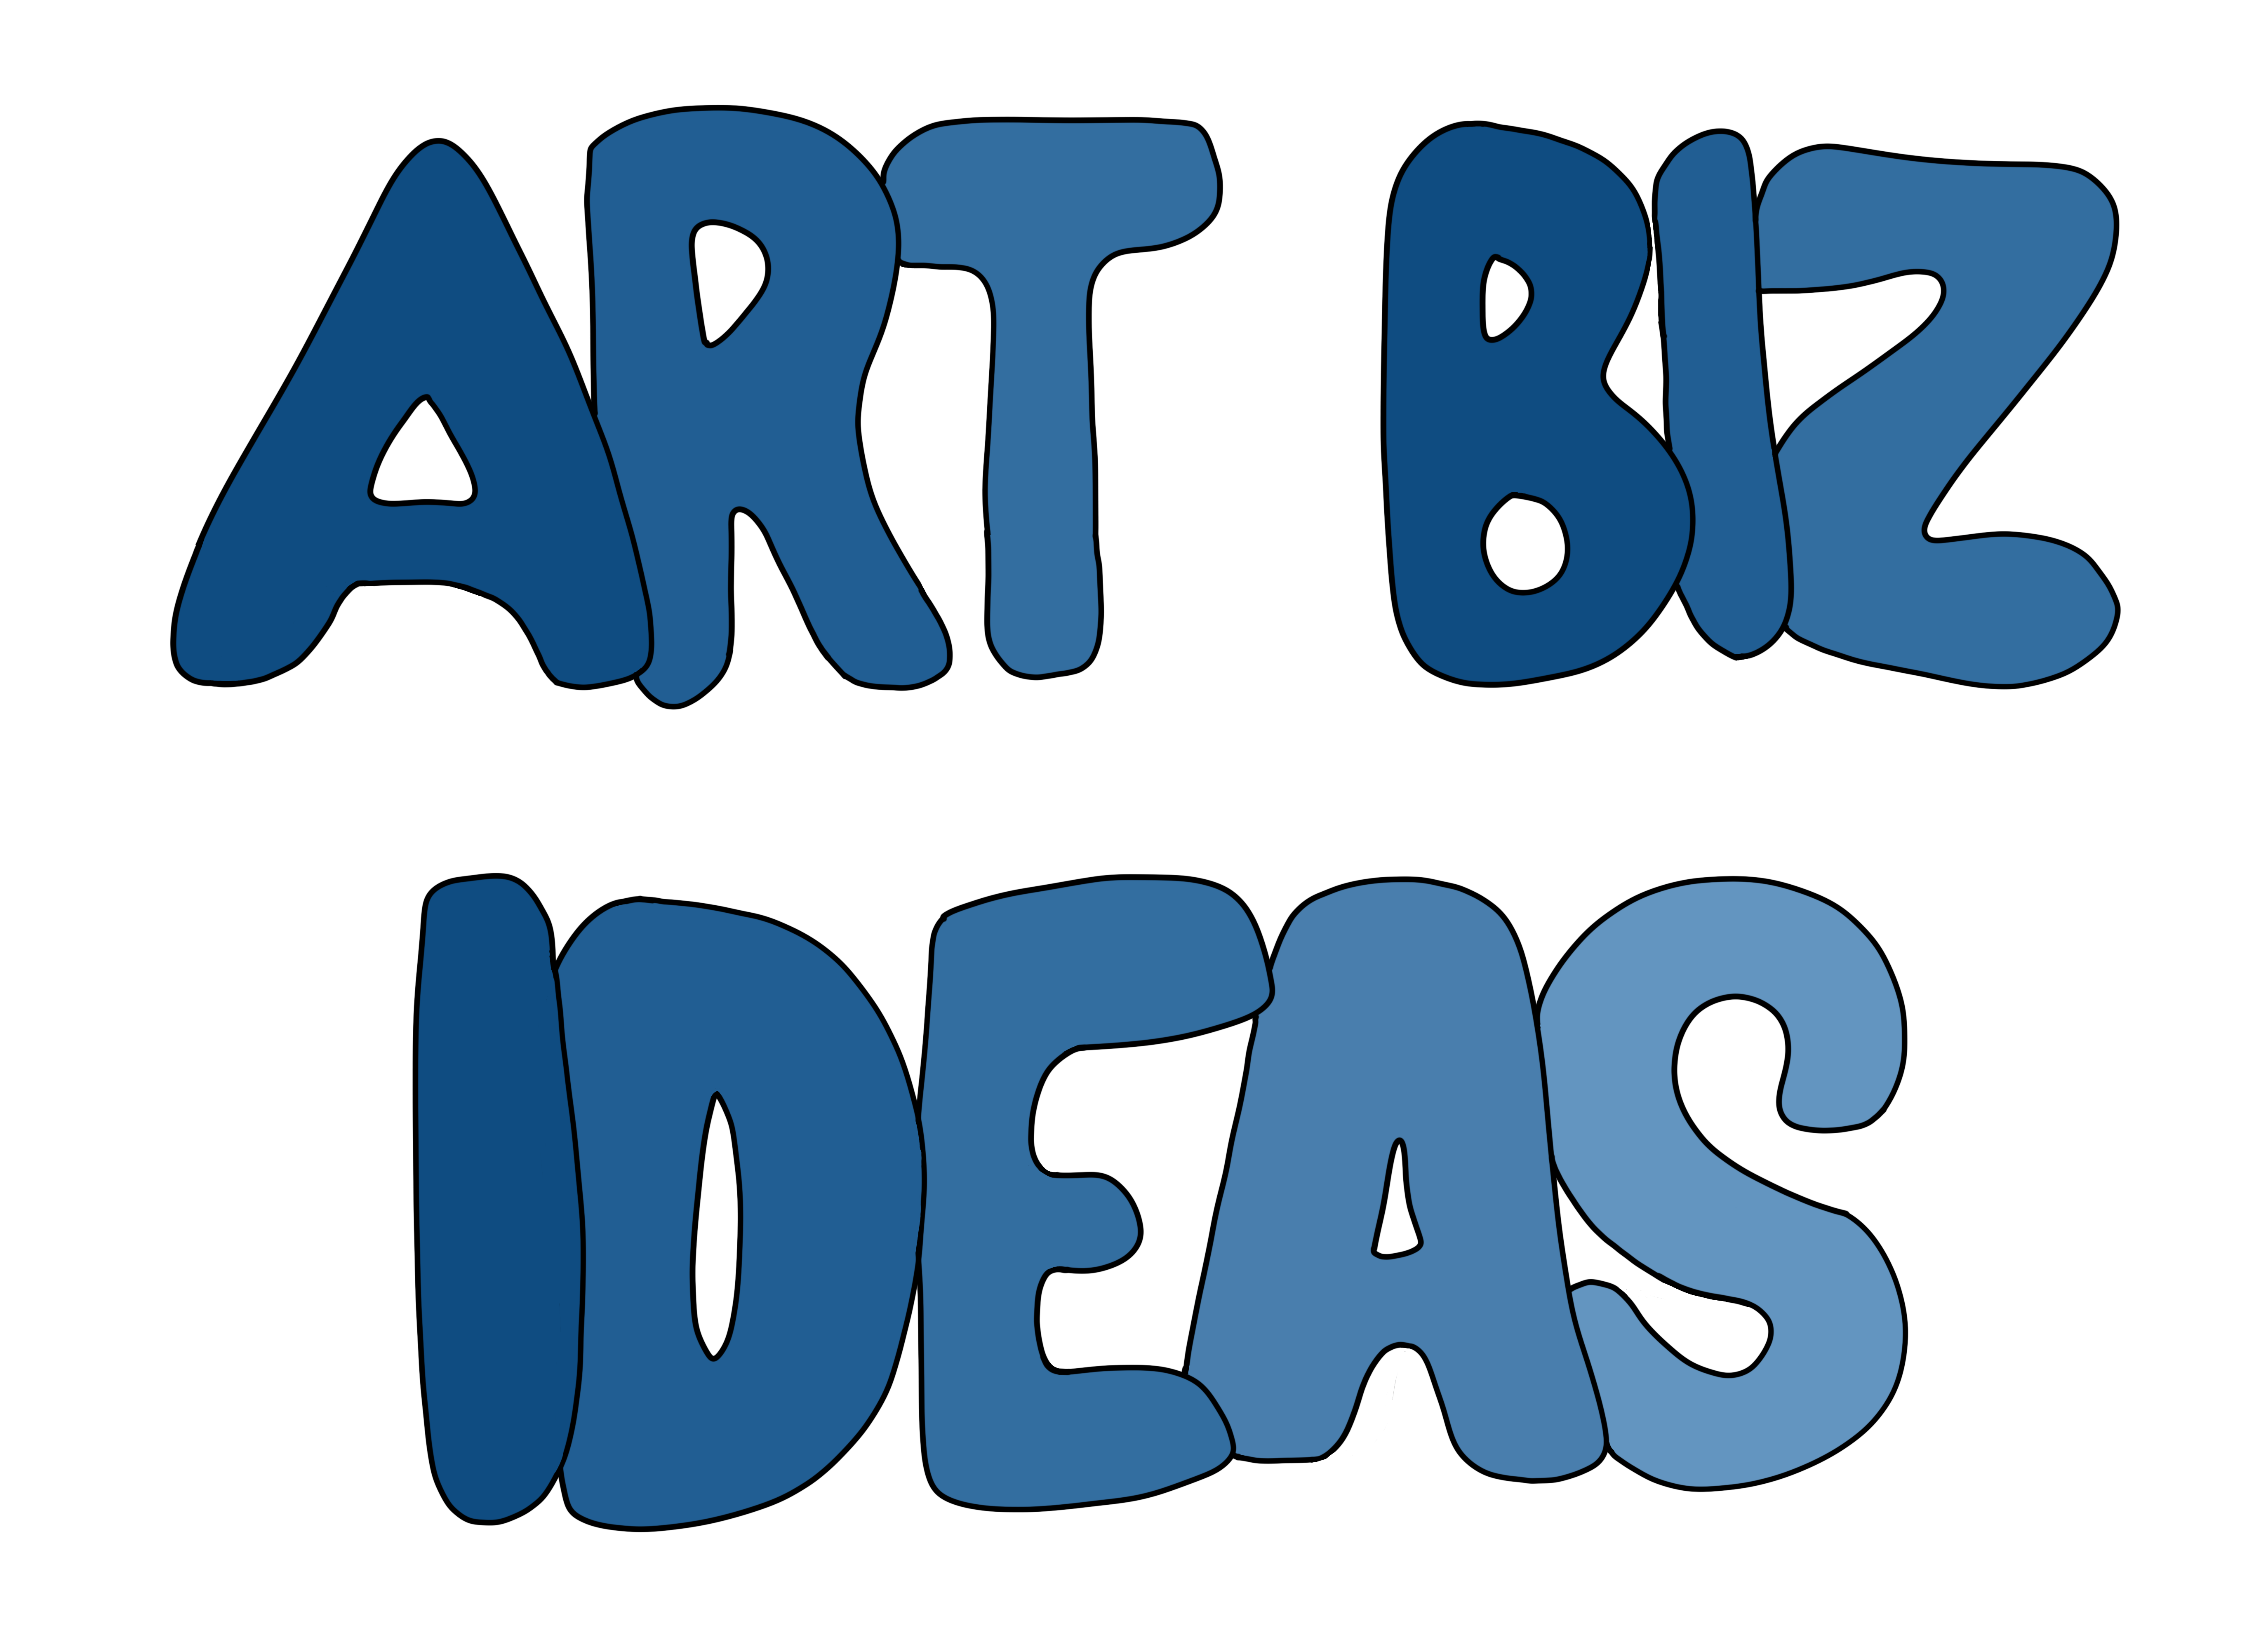 Art Business Ideas